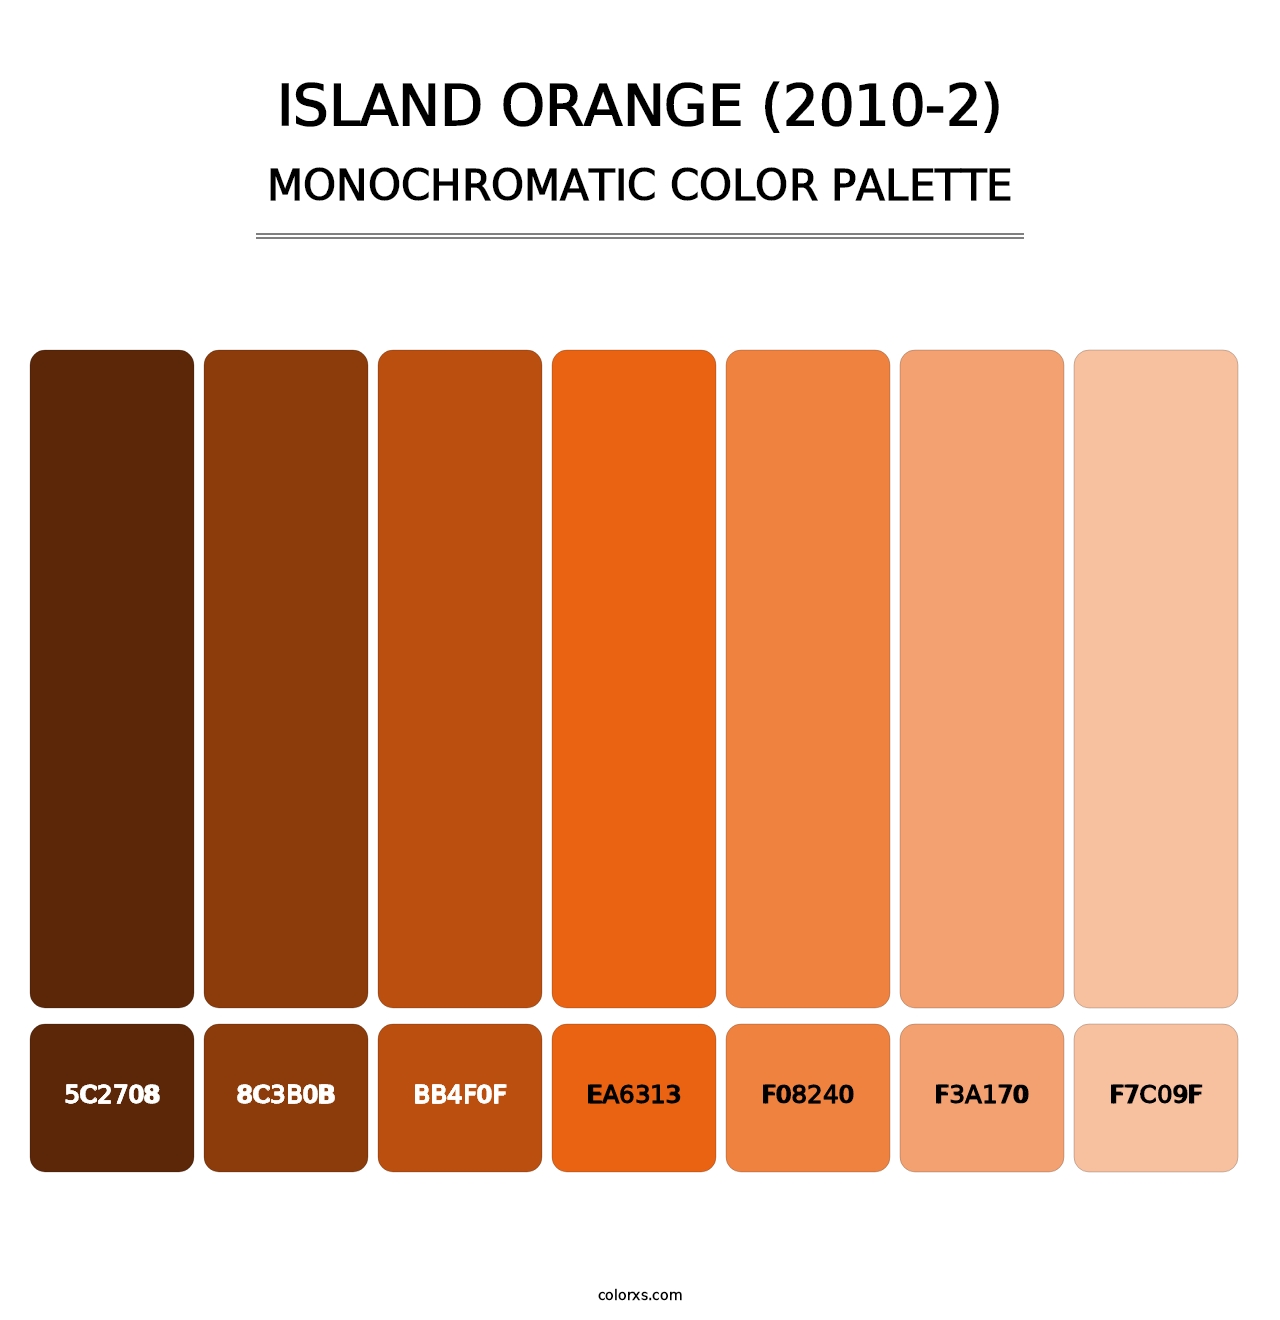 Island Orange (2010-2) - Monochromatic Color Palette